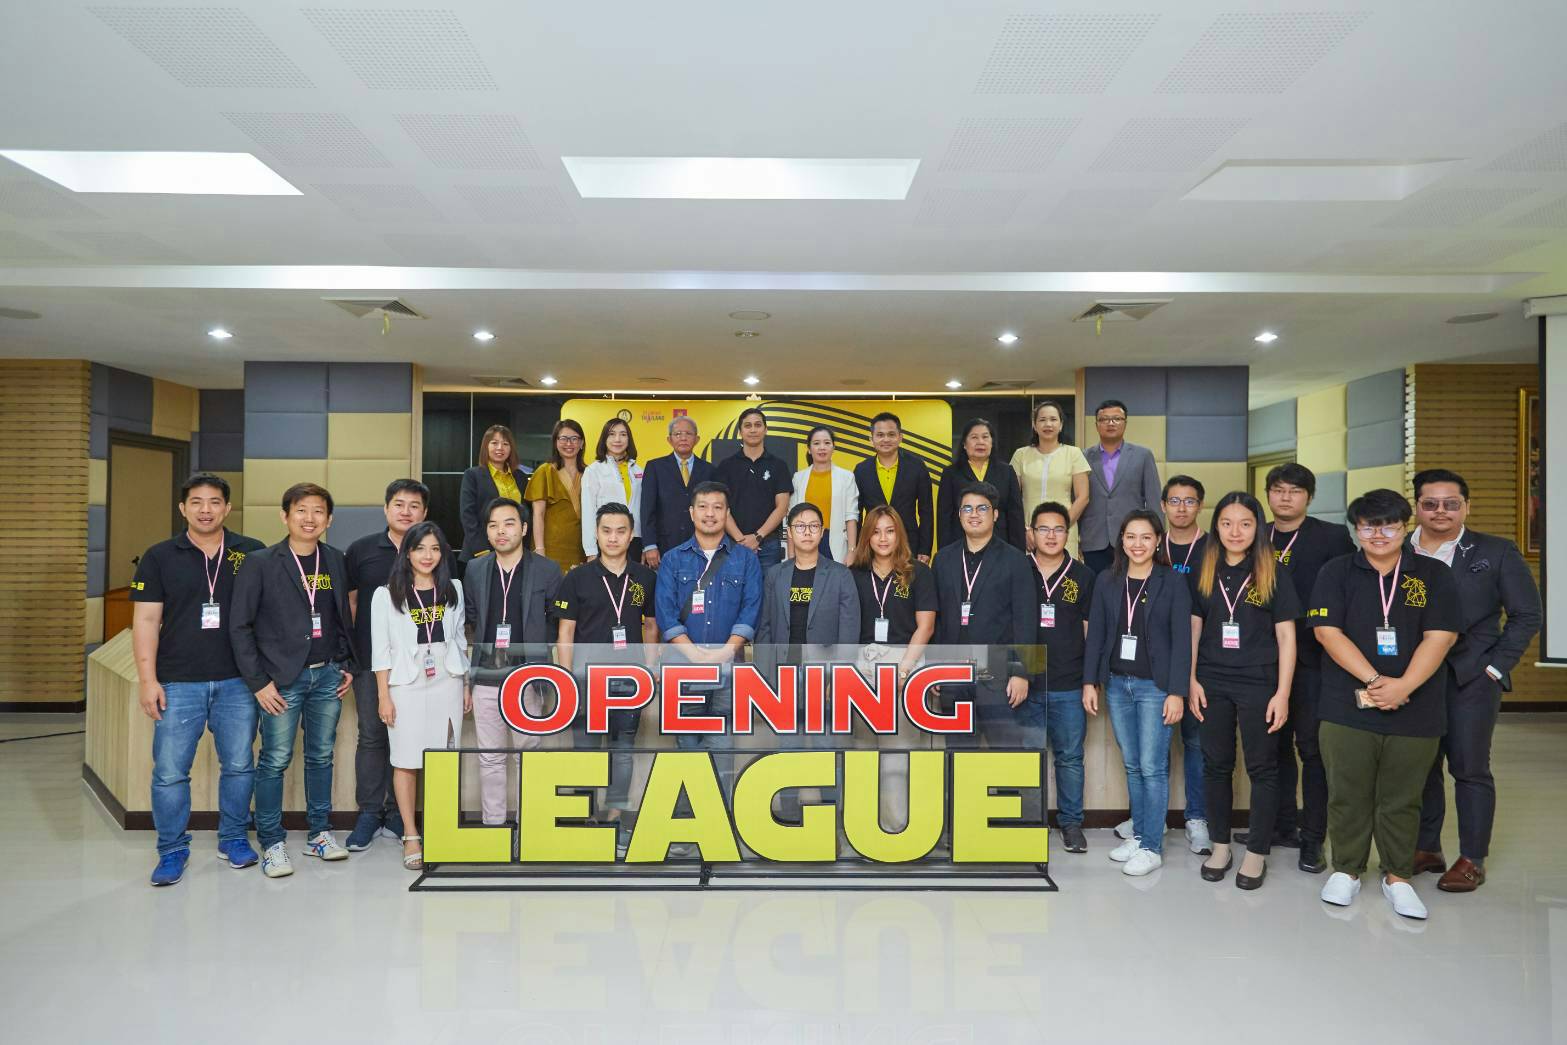 ขอแสดงความยินดีกับนักศึกษาคว้ารางวัลชนะเลิศ Startup Thailand League 2019 